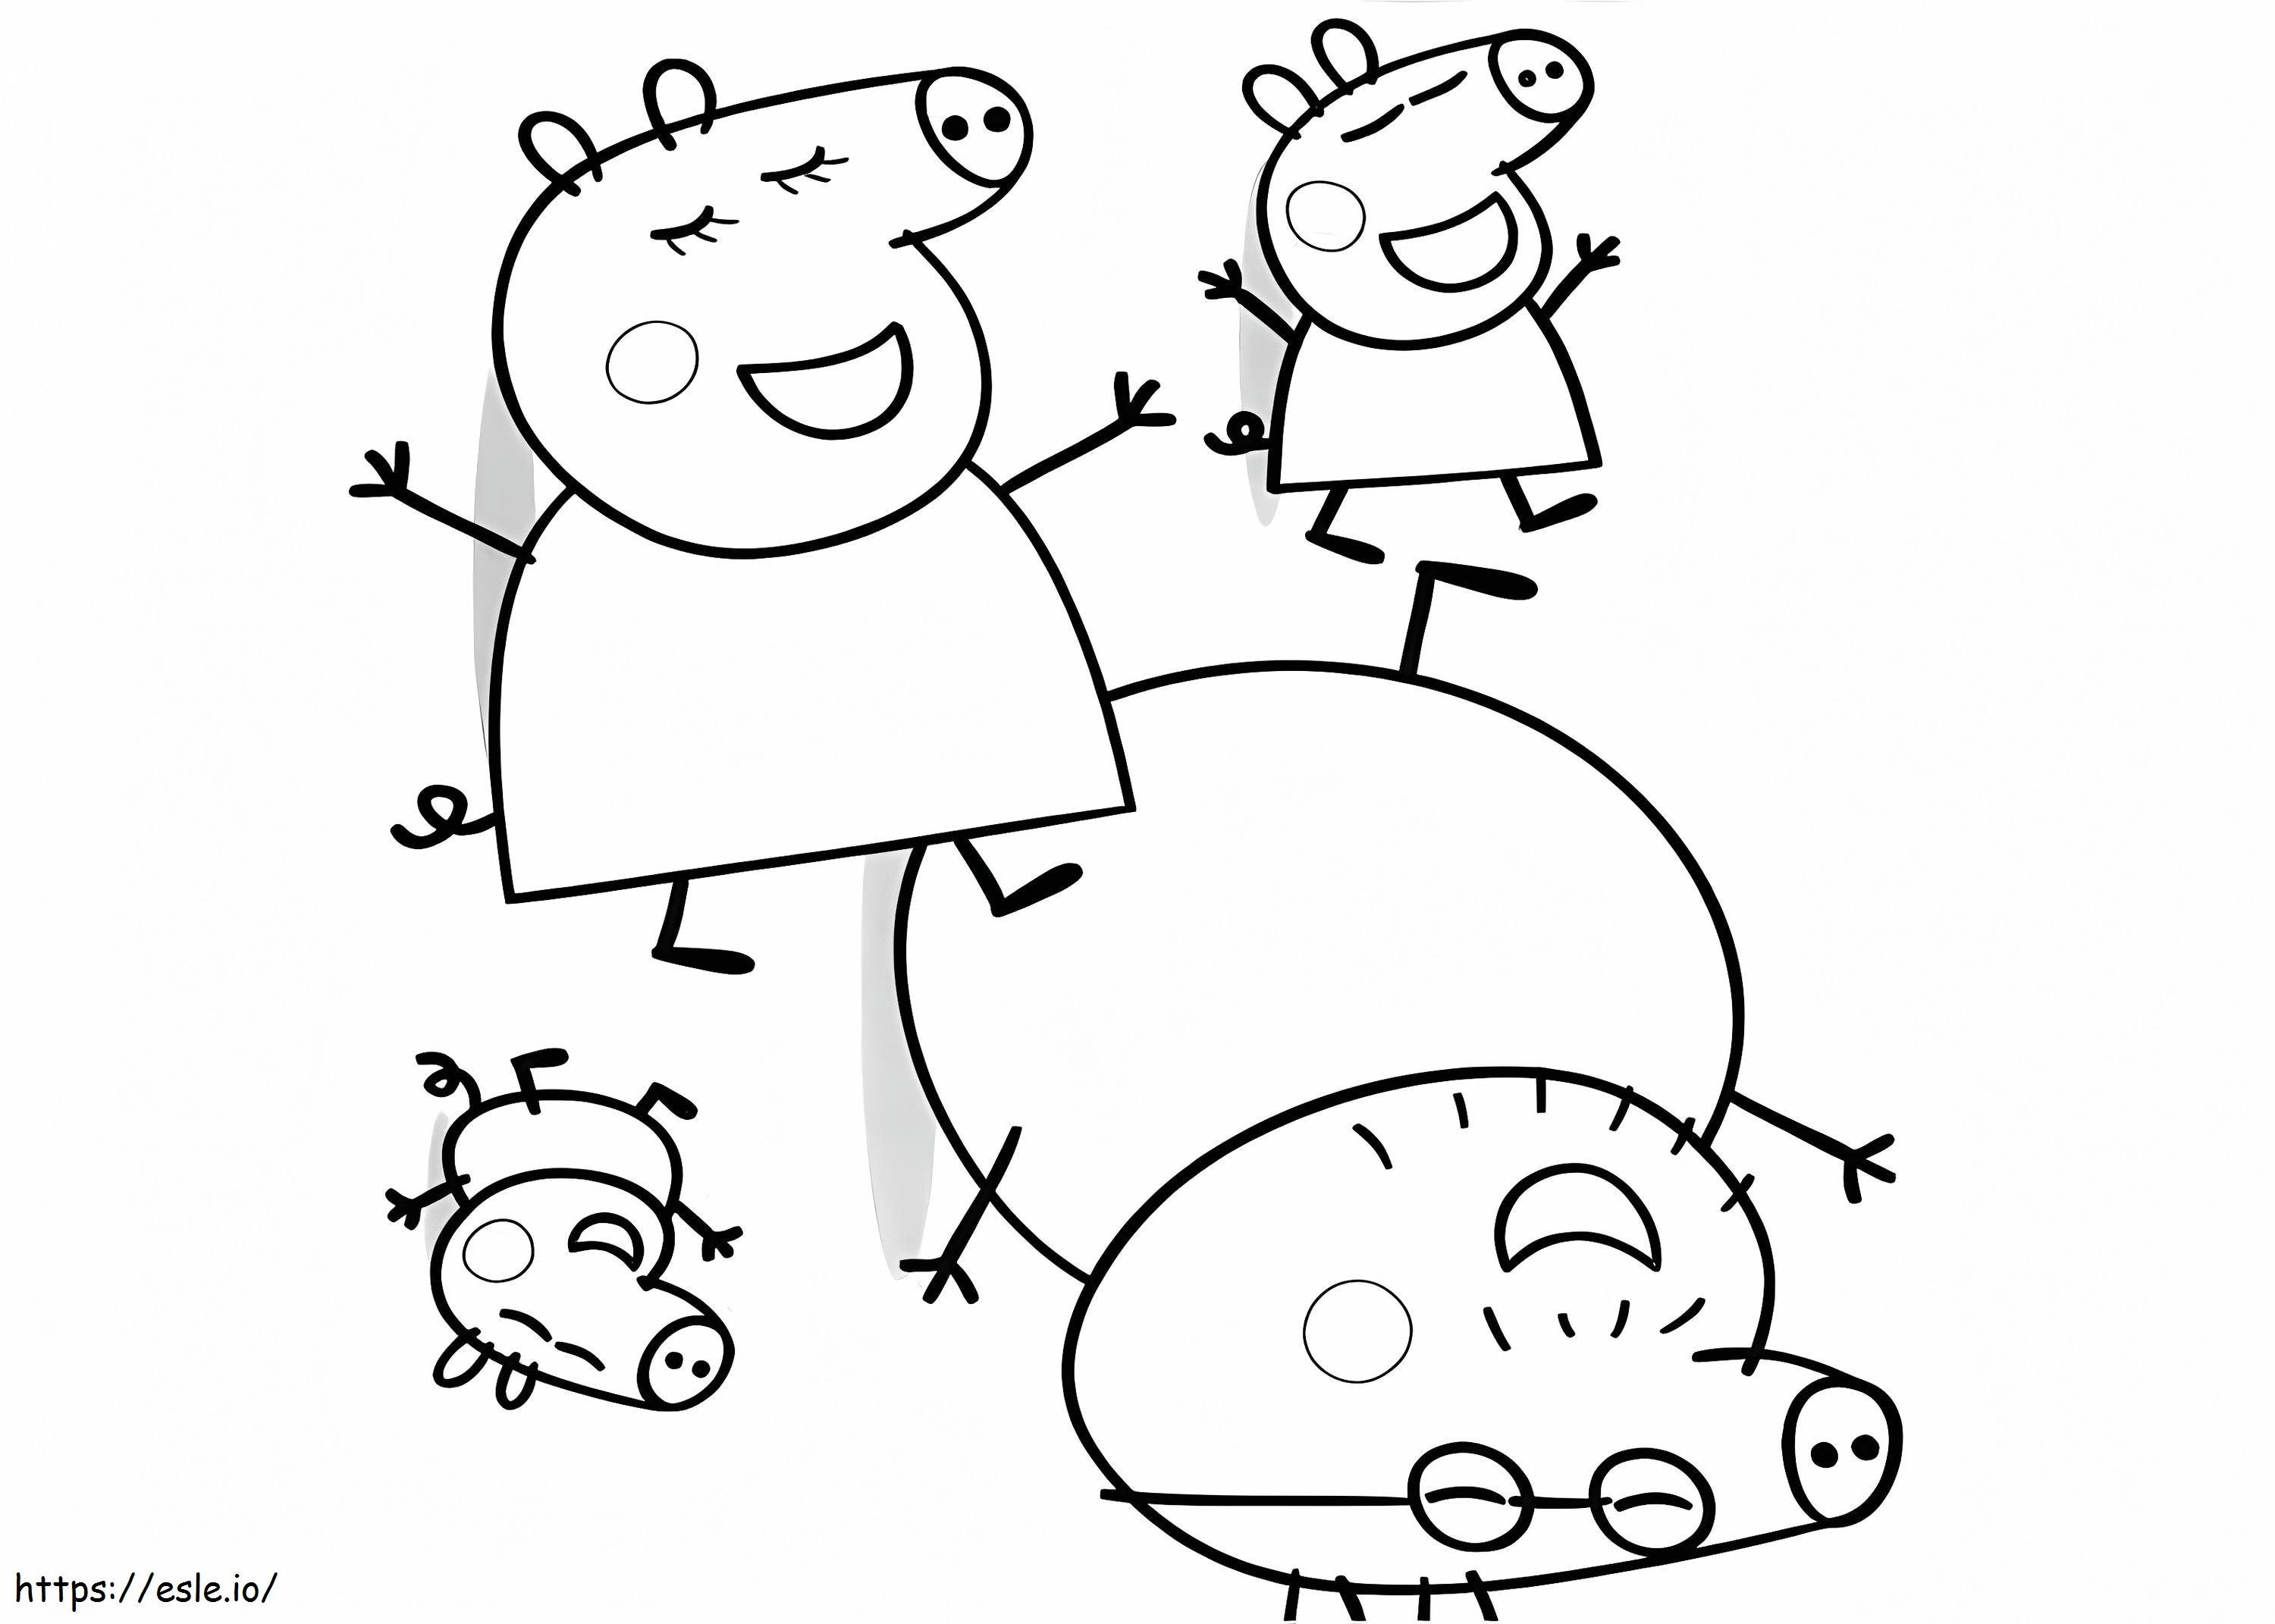 desenhos para desenhar peppa pig